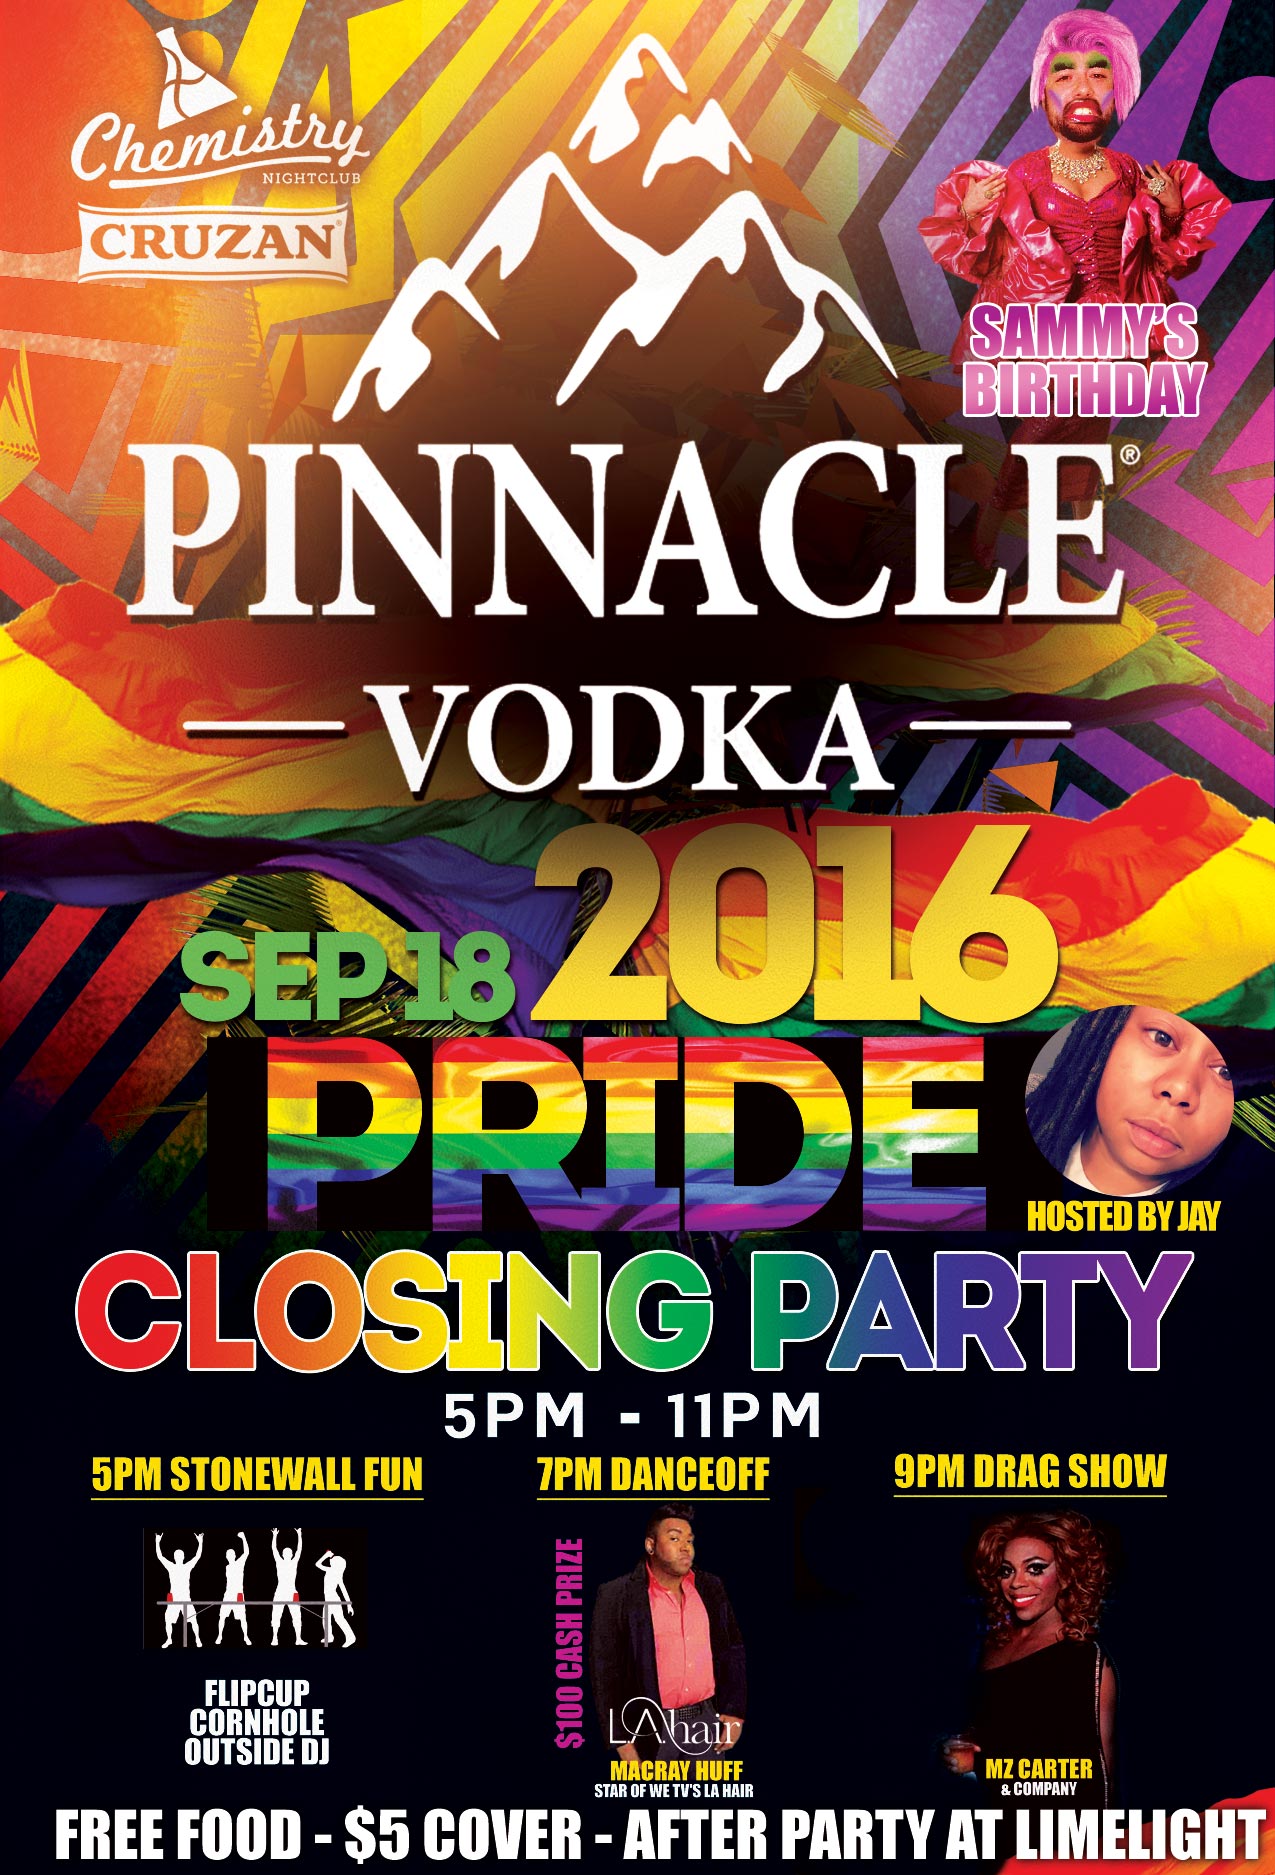 Pride-closing-party